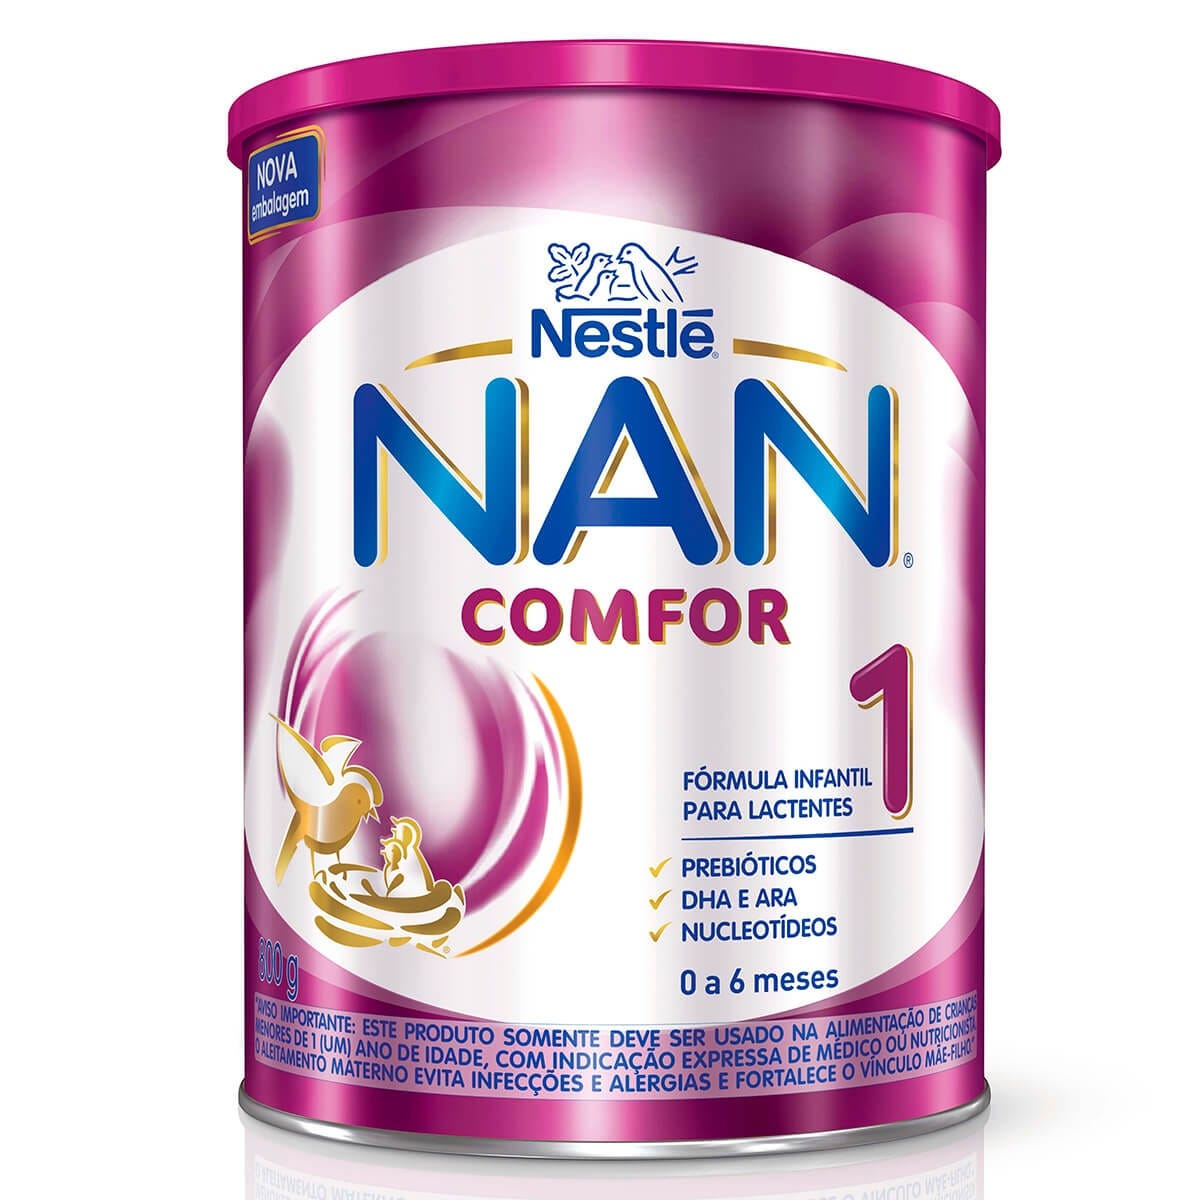 Nan Supreme Pro 1 - Farmacia Pharmadeje